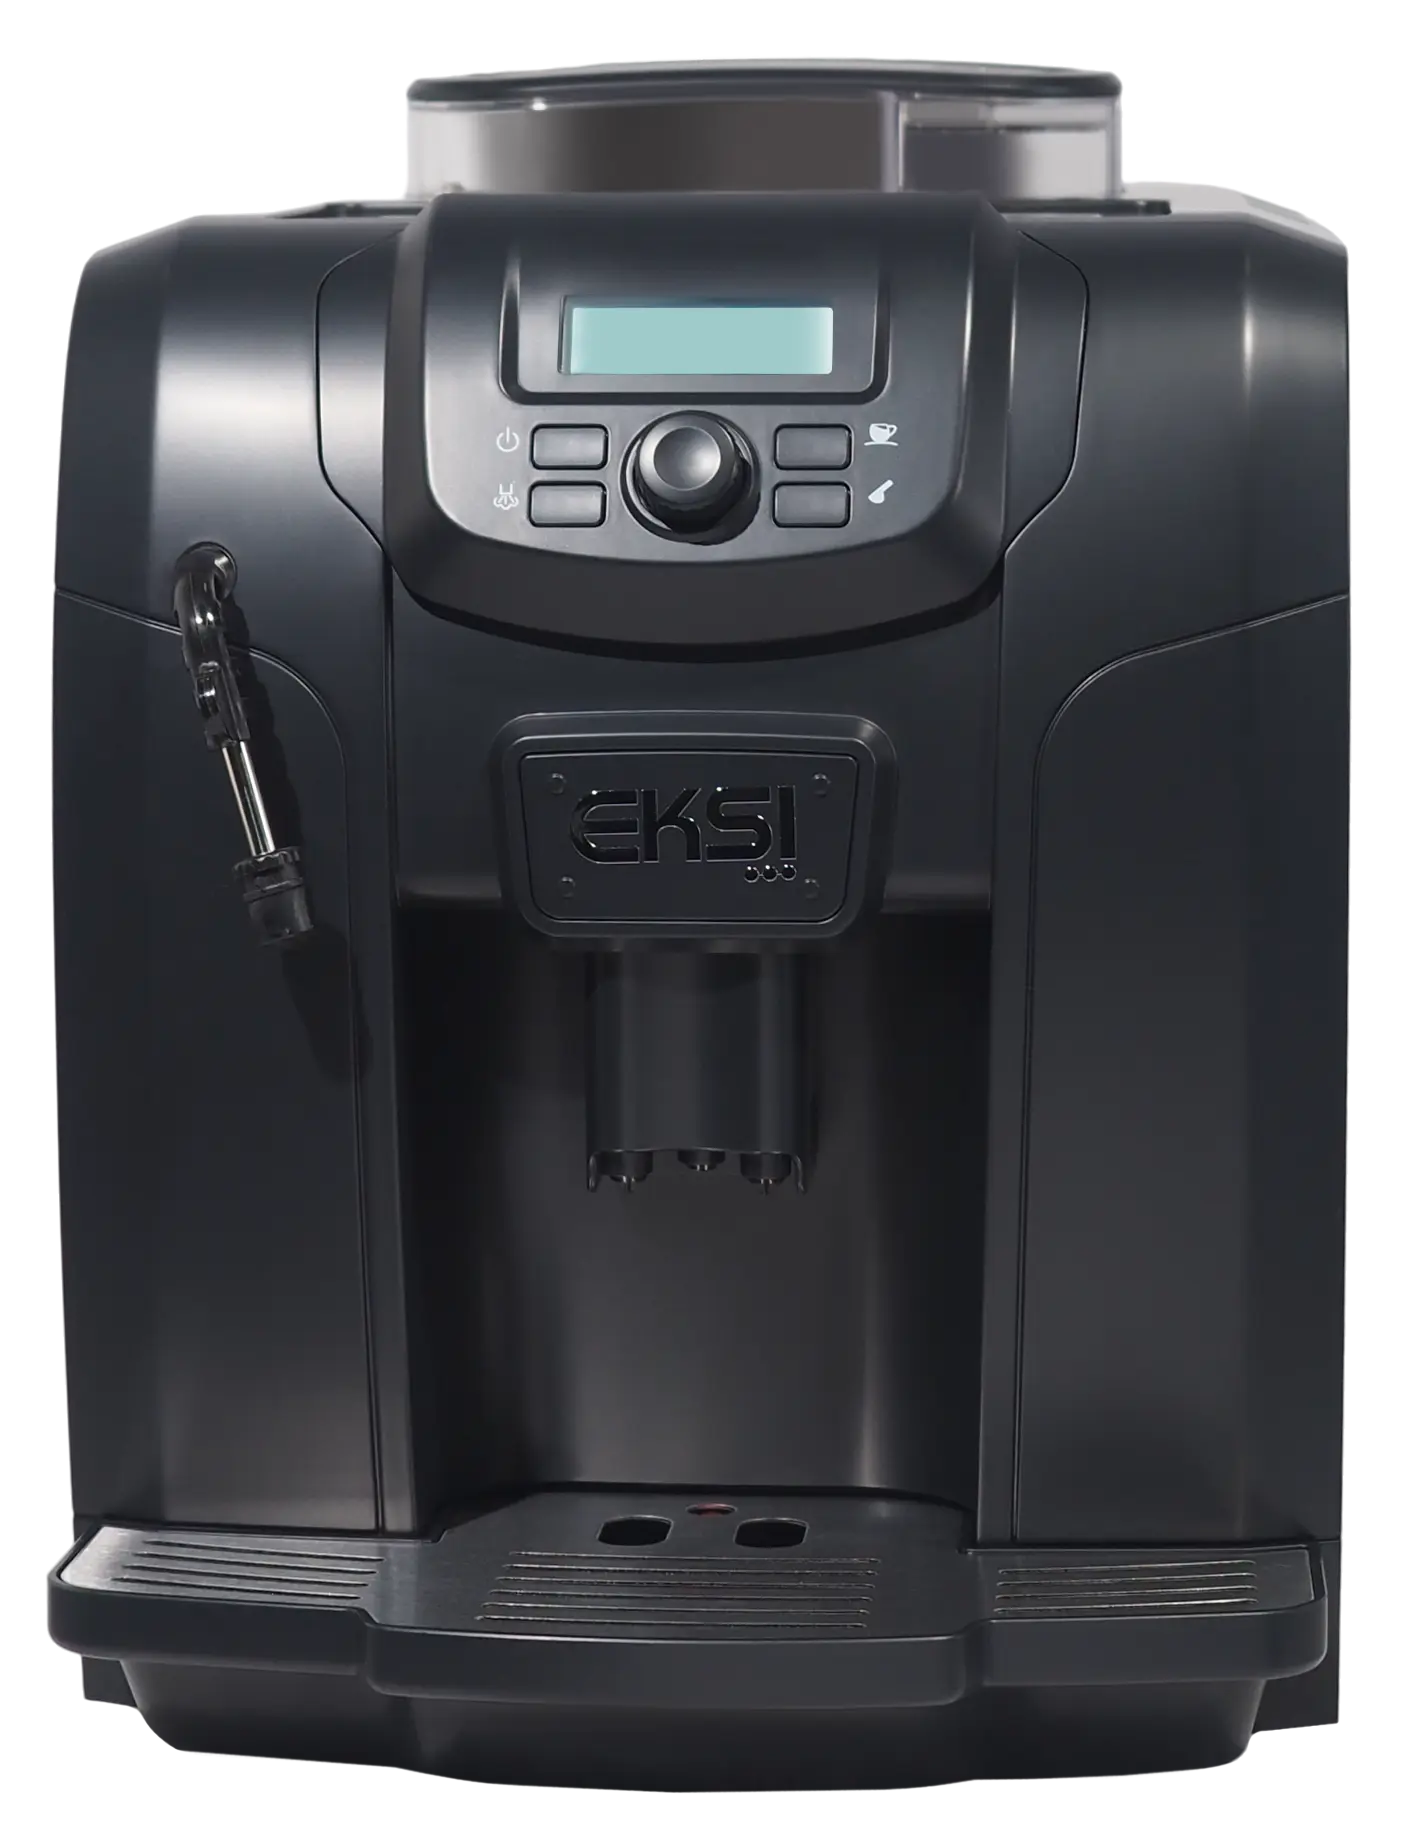 Кофемашина автоматическая EKSI EMC-715